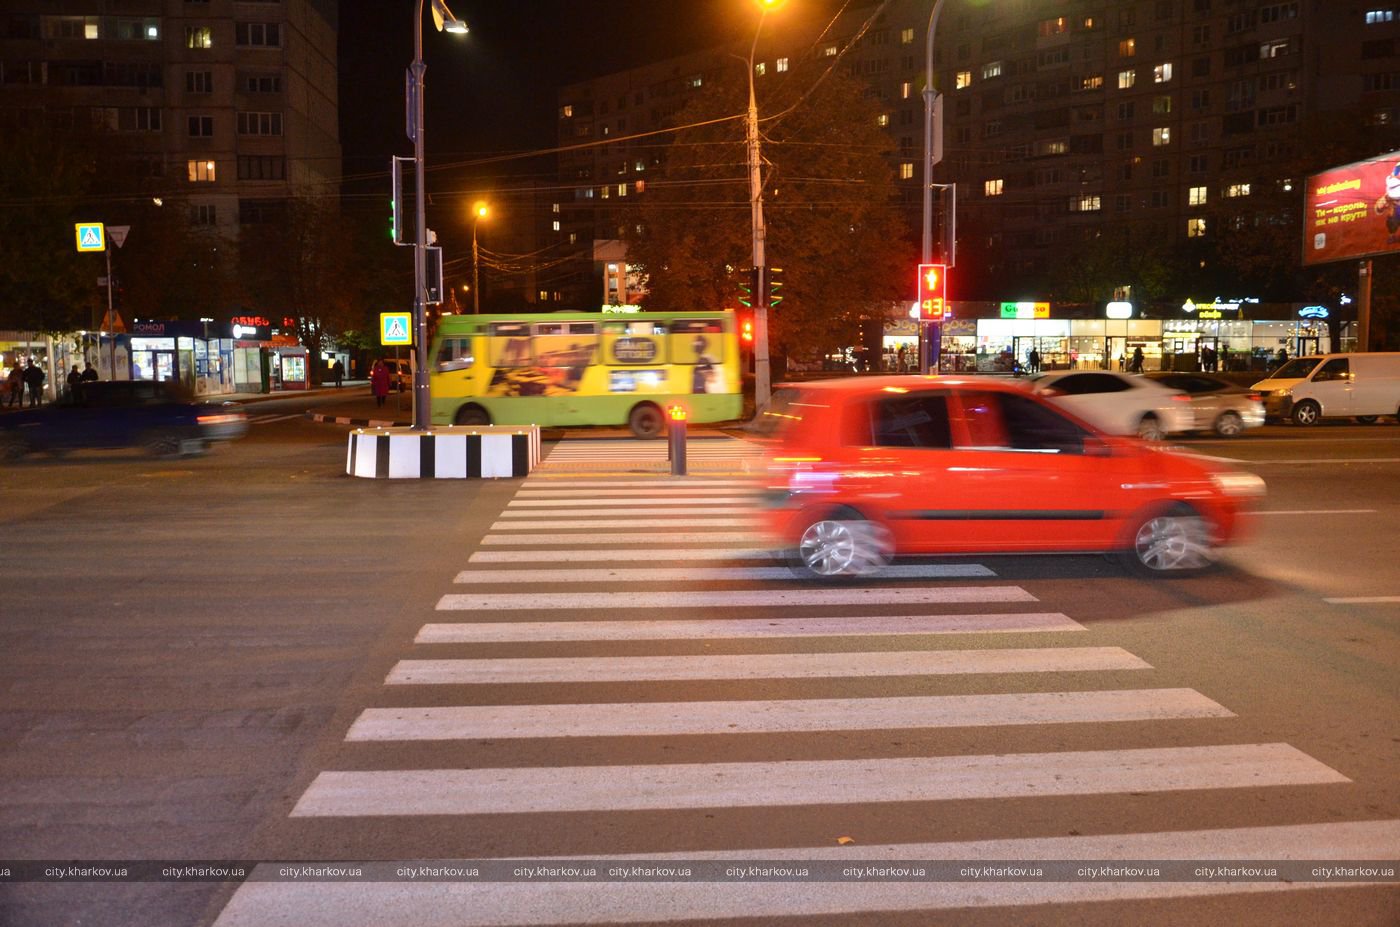 Даже если влетит тяжелая машина, пешеходы останутся живы: на Алексеевке появился инновационный островок безопасности (фото)